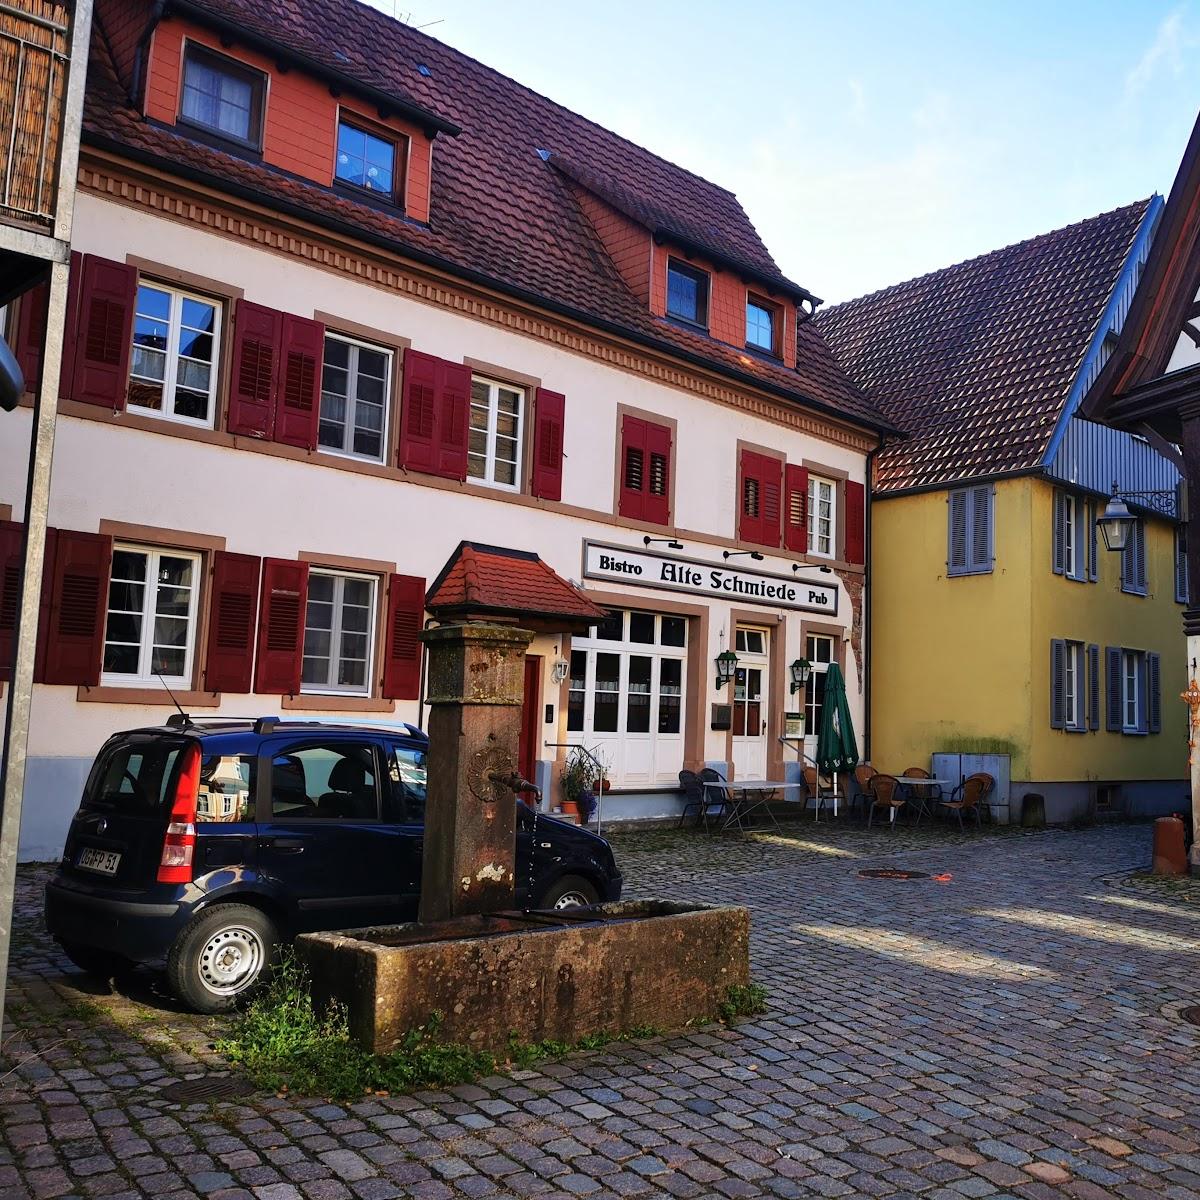 Restaurant "Alte Schmiede Pub-Bistro" in Haslach im Kinzigtal